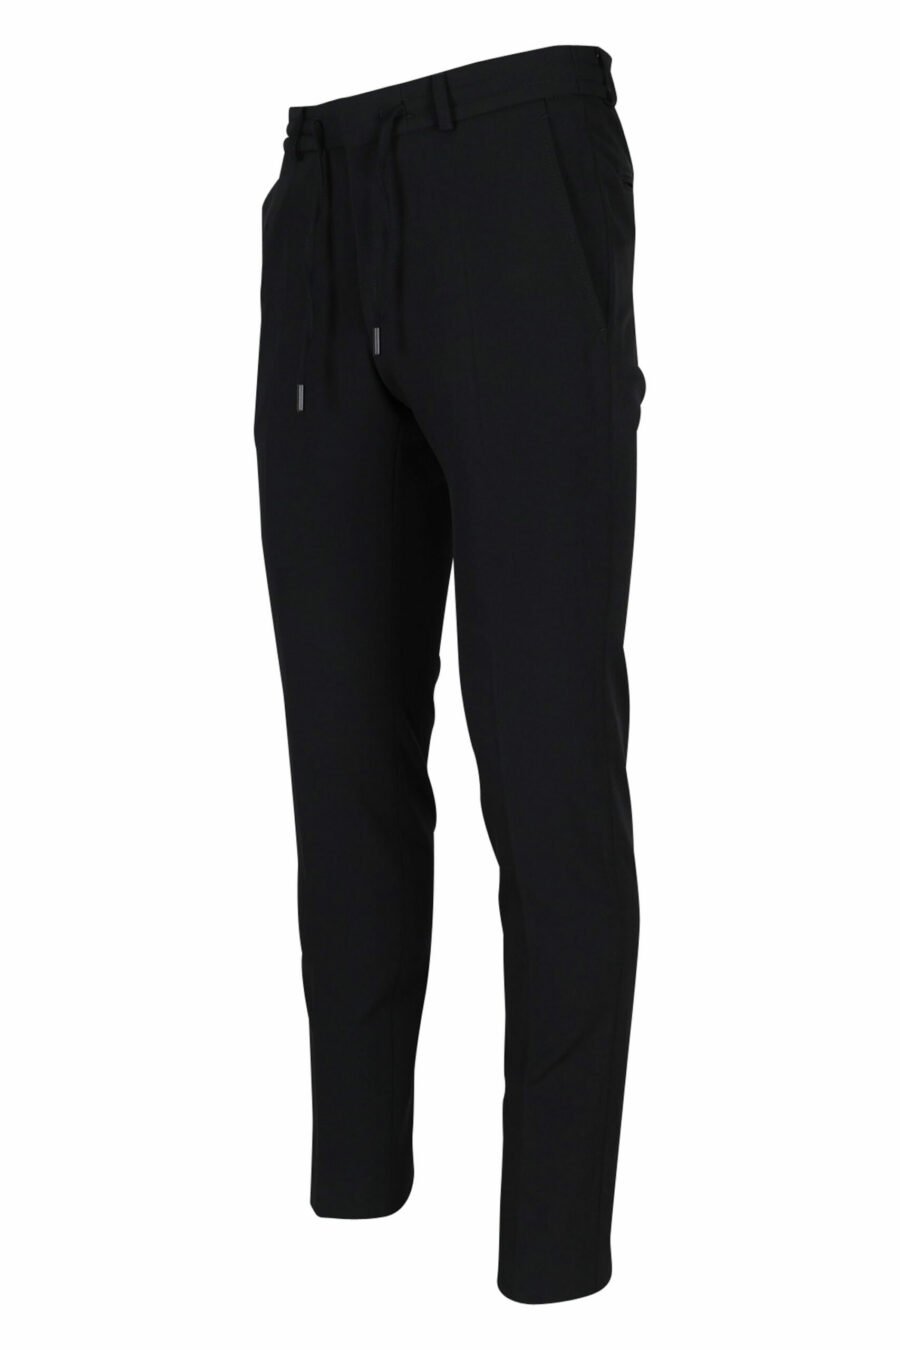 Pantalon noir avec mini-logo en caoutchouc - 4062226374224 1 échelle